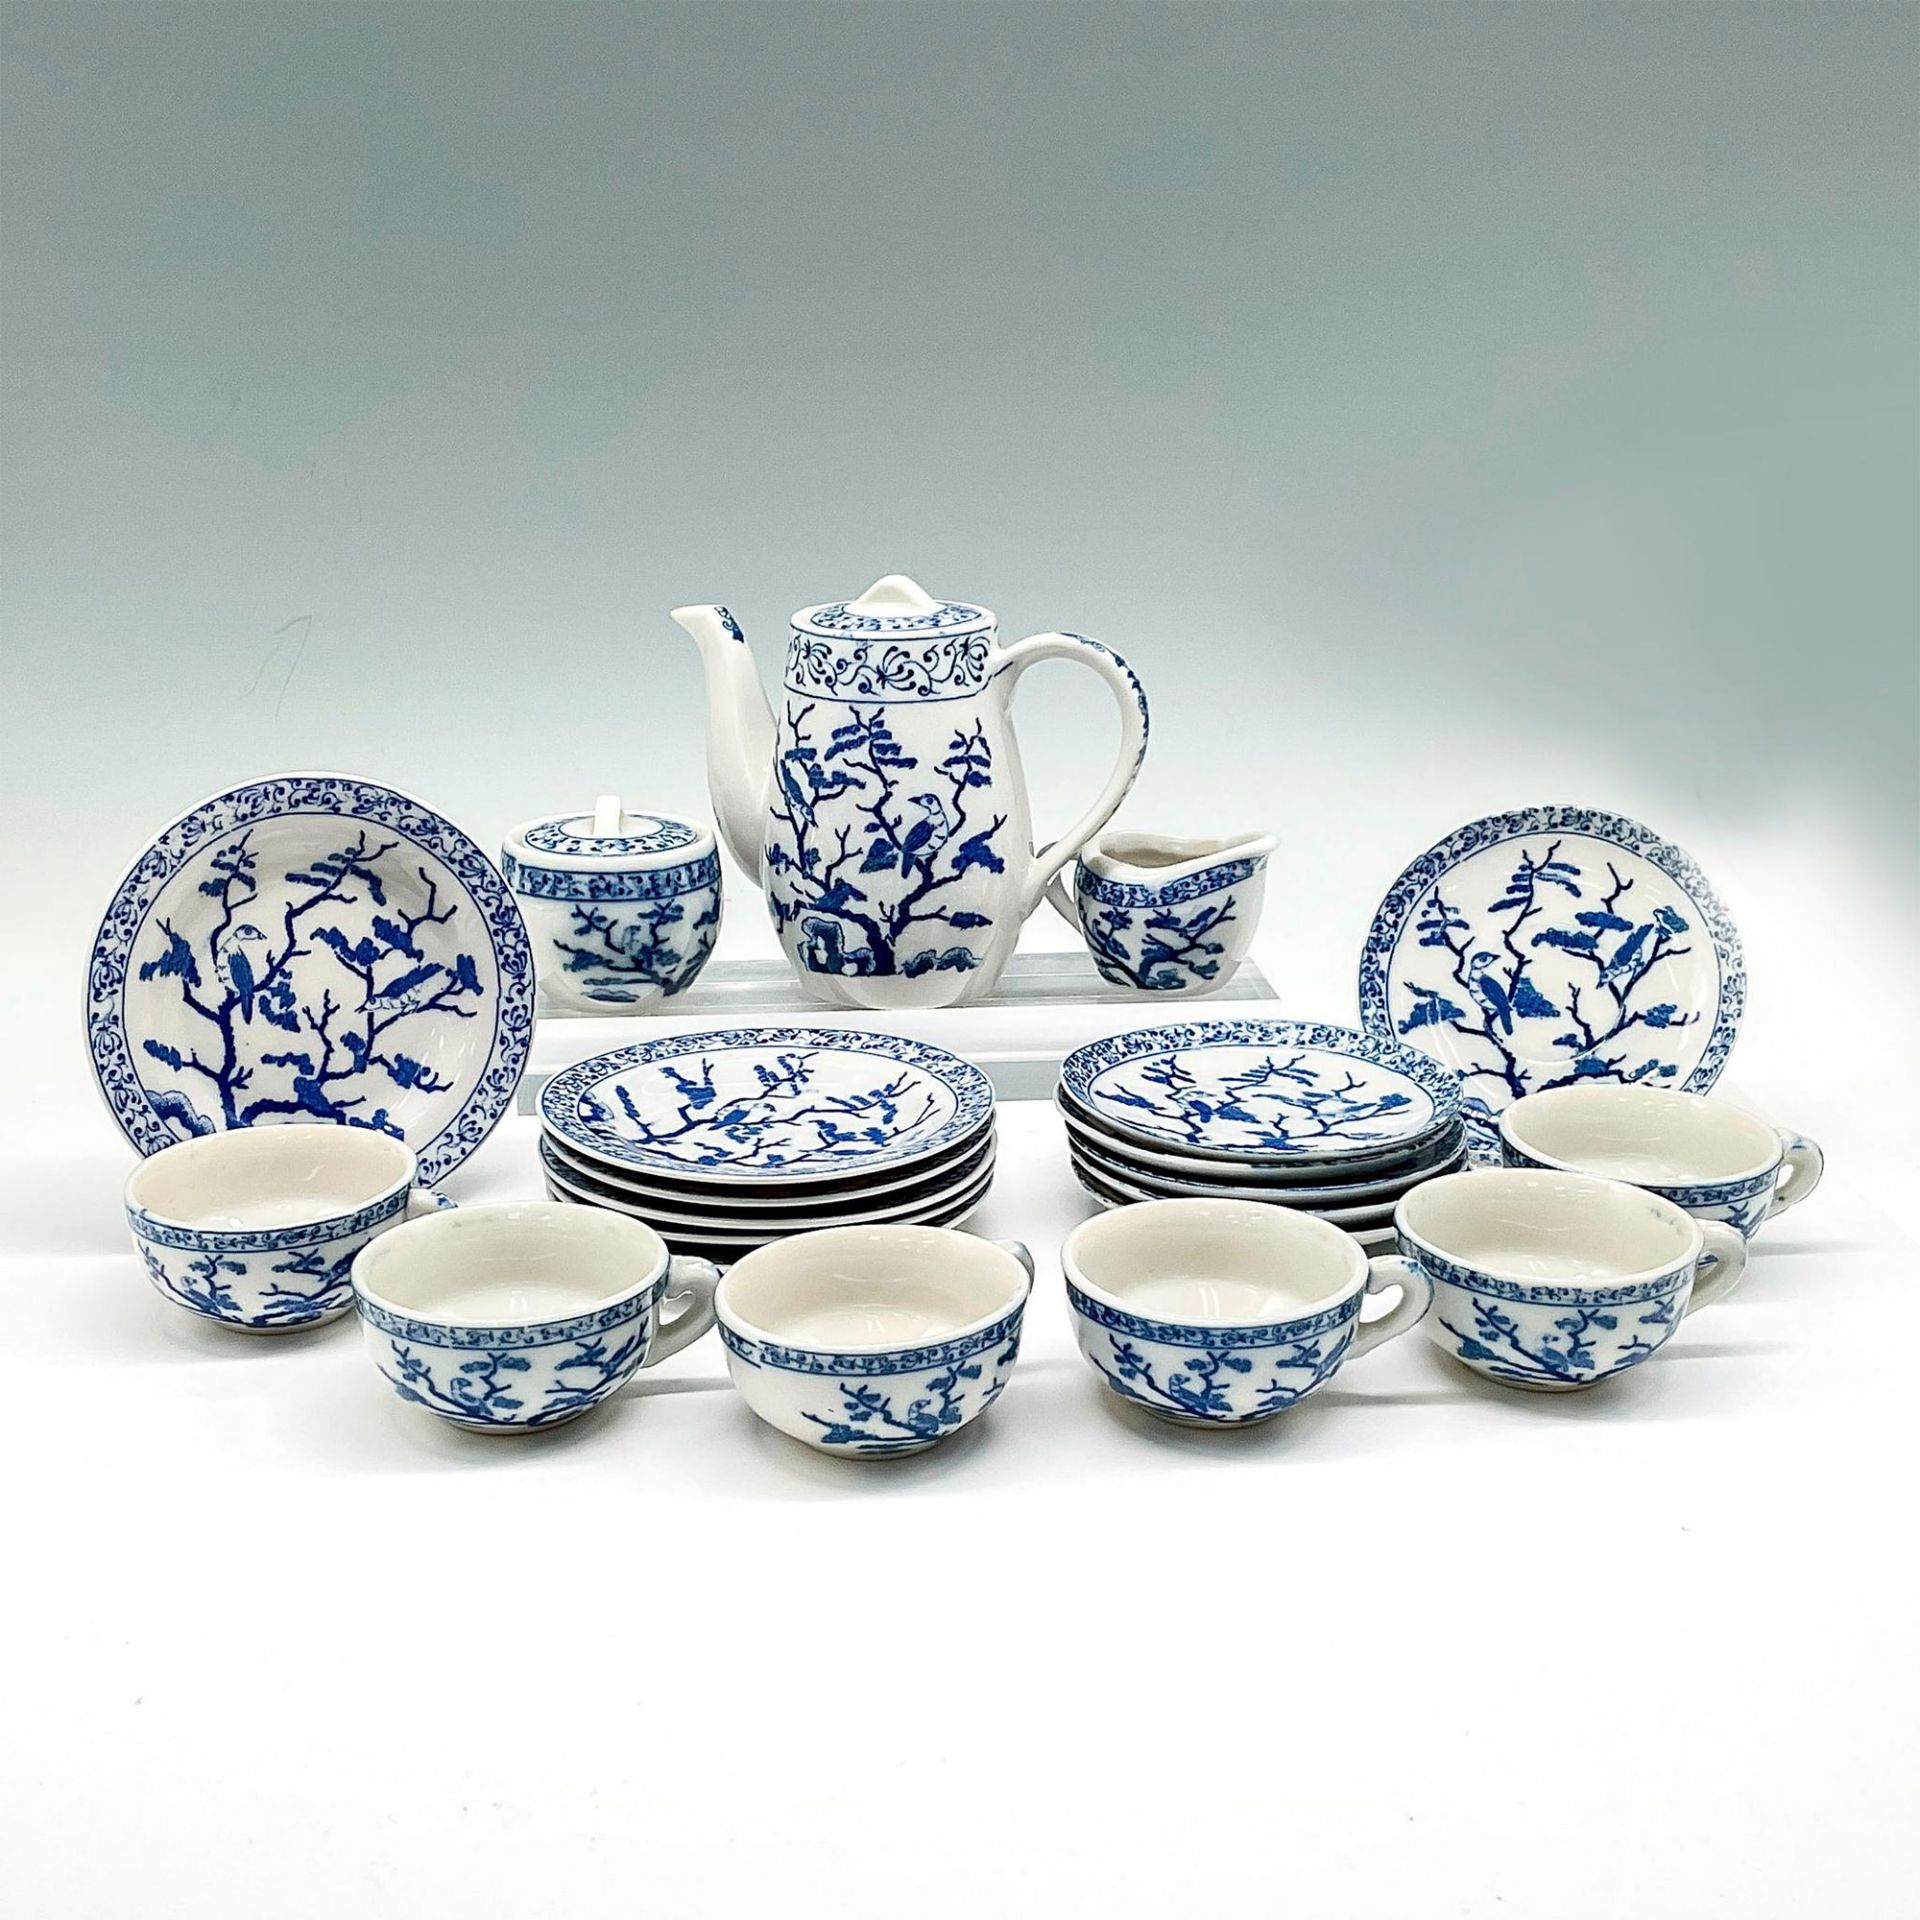 17pc Vintage Collectible Porcelain Child's Tea Set - Image 2 of 3